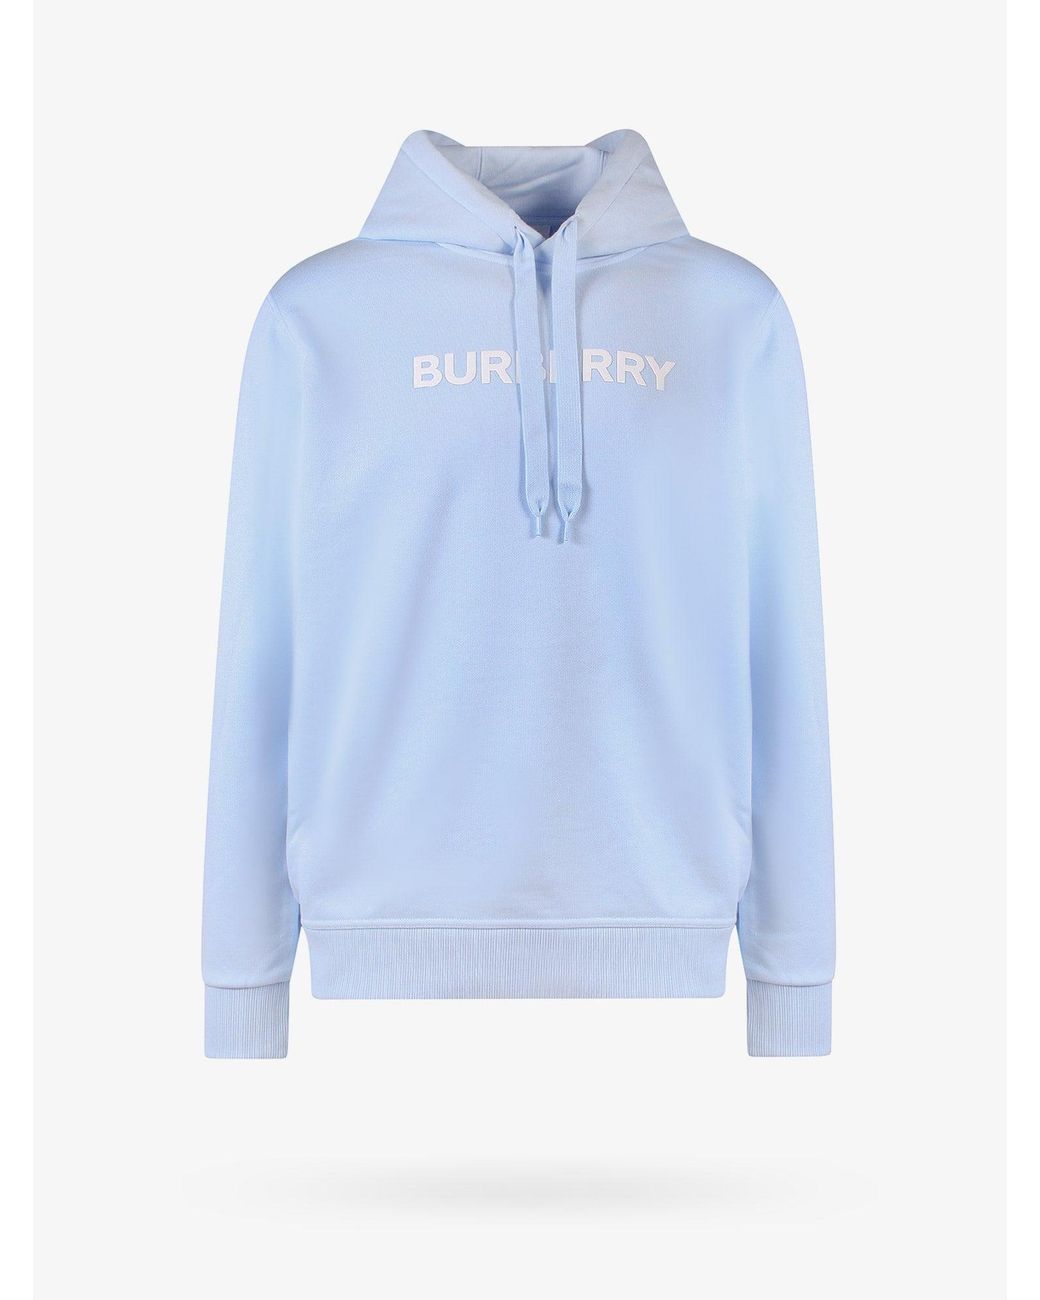 BURBERRY: sweatshirt for men - Blue  Burberry sweatshirt 8029557 online at